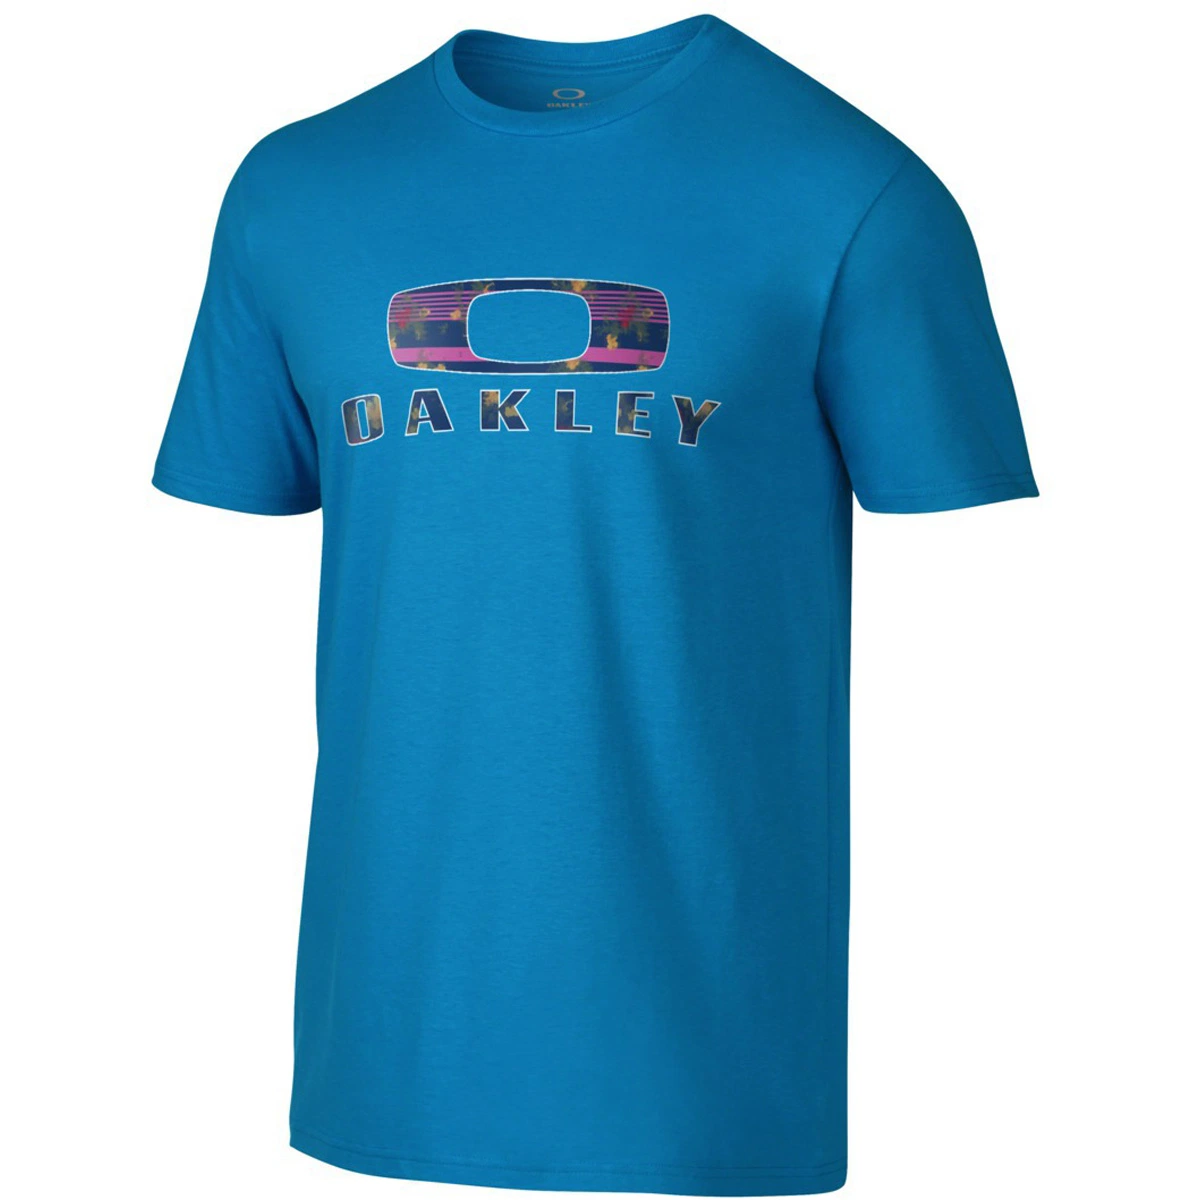 Custom печать хорошего качества хлопка мужчин' S персонализированные T рубашки оптовая торговля Tshirts Tee футболки на заказ